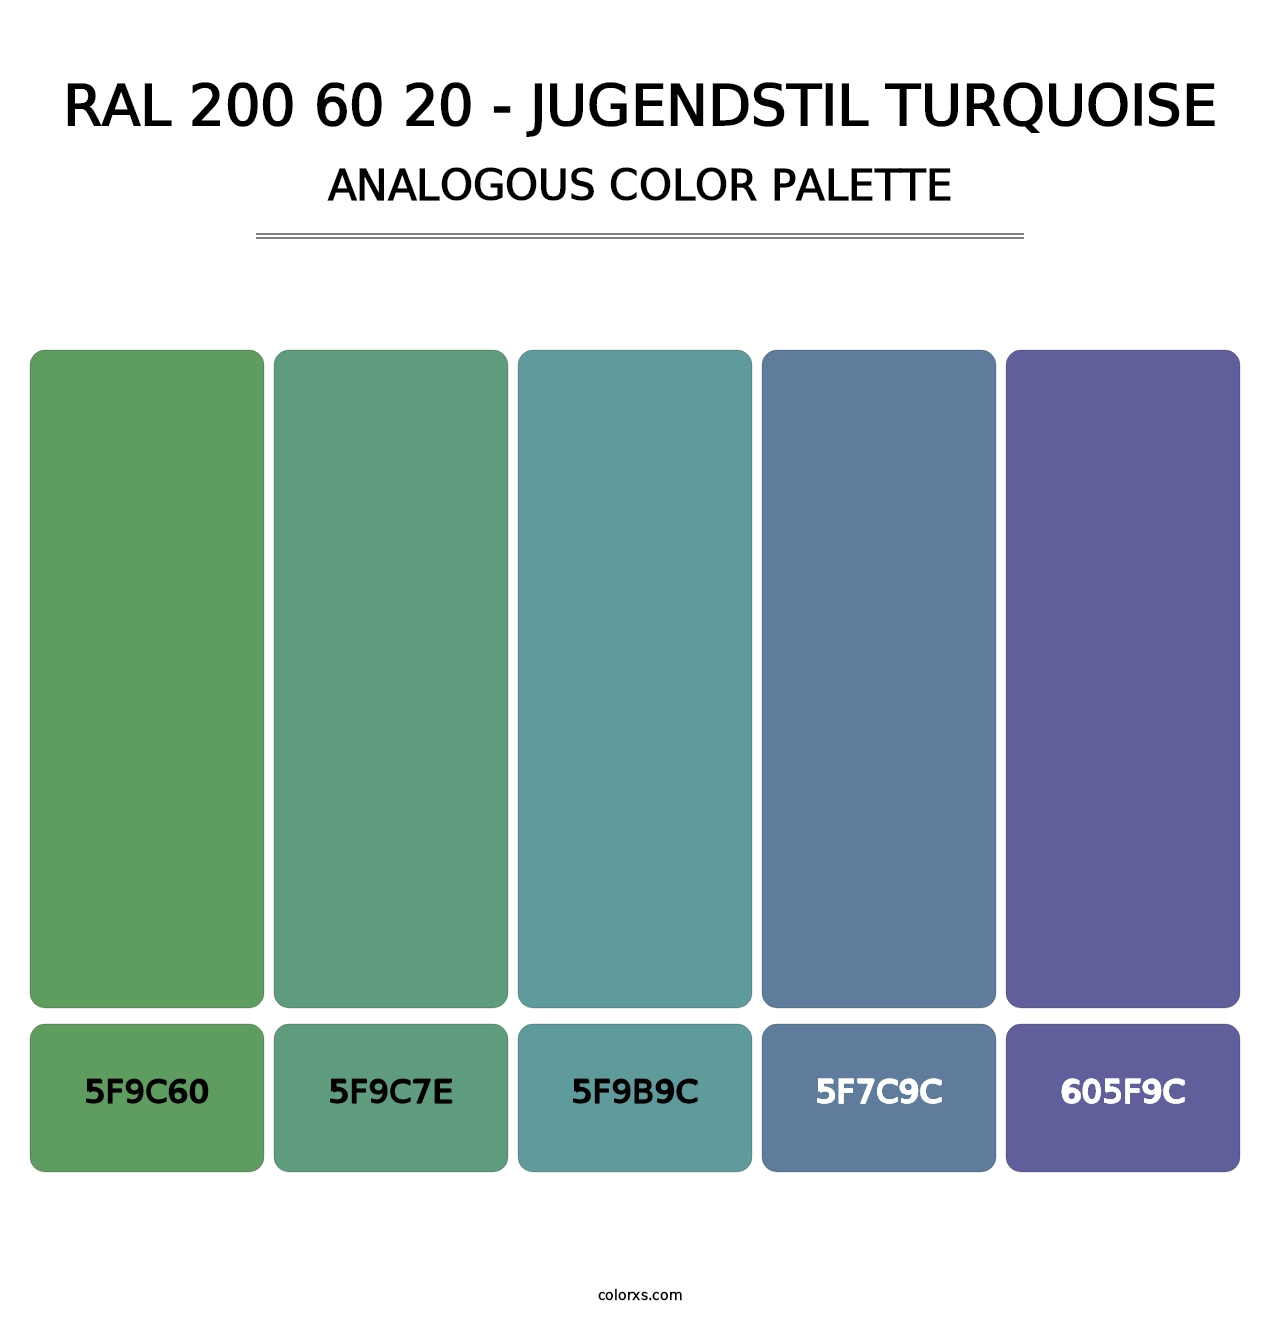 RAL 200 60 20 - Jugendstil Turquoise - Analogous Color Palette